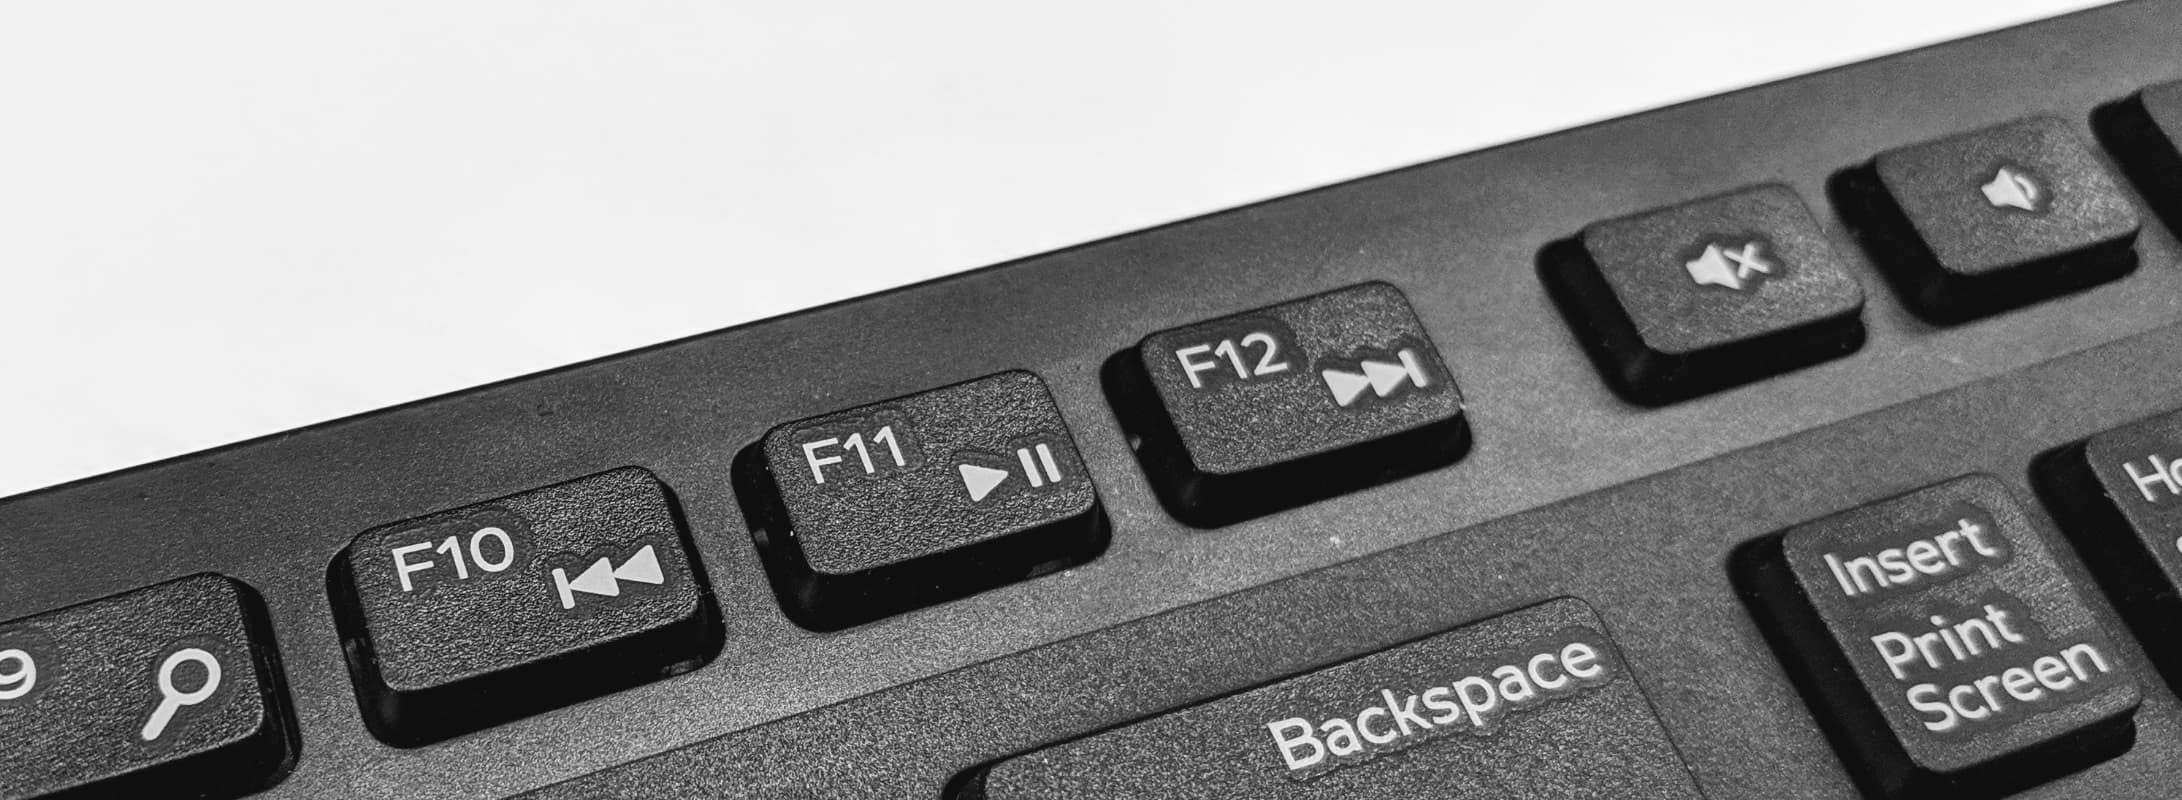 कीबोर्ड के मीडिया बटन